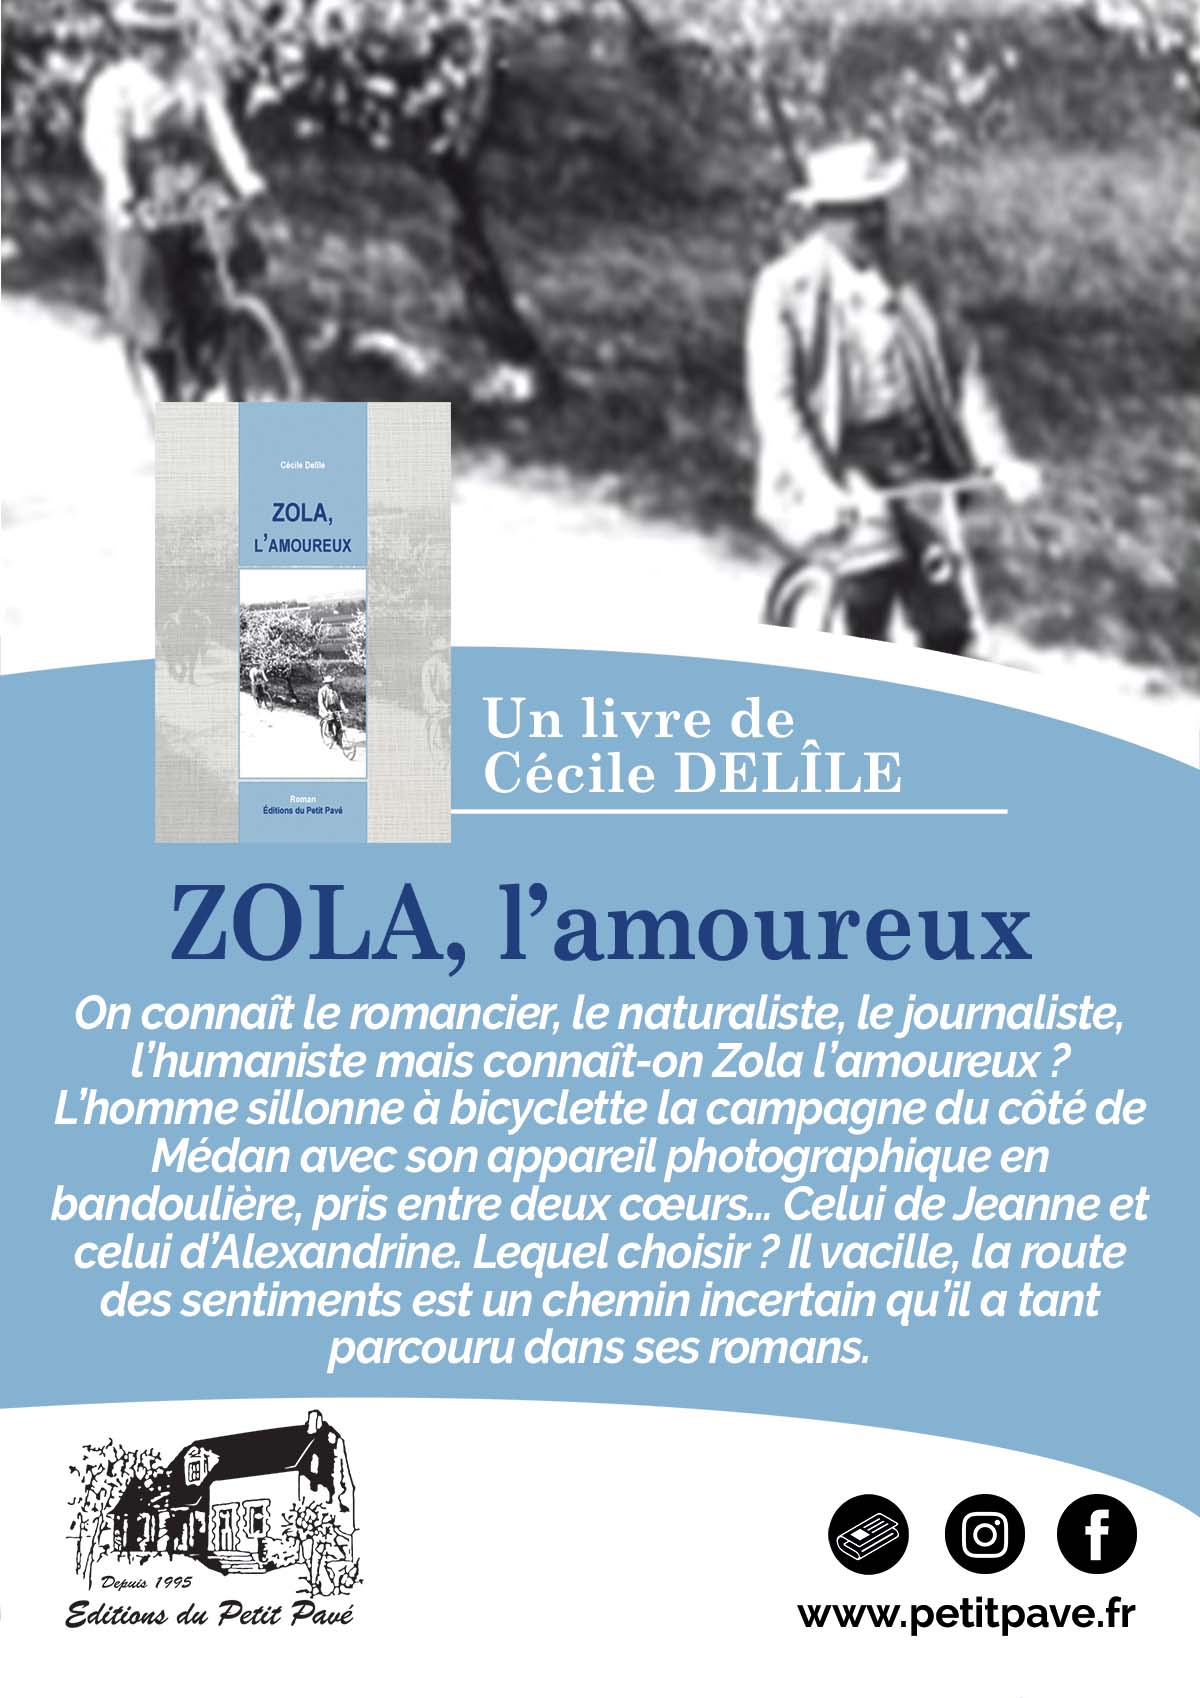 L'actualit� c'est Z comme ZOLA - Photo ouvrage_petitpave_zola_lamoureux.jpg